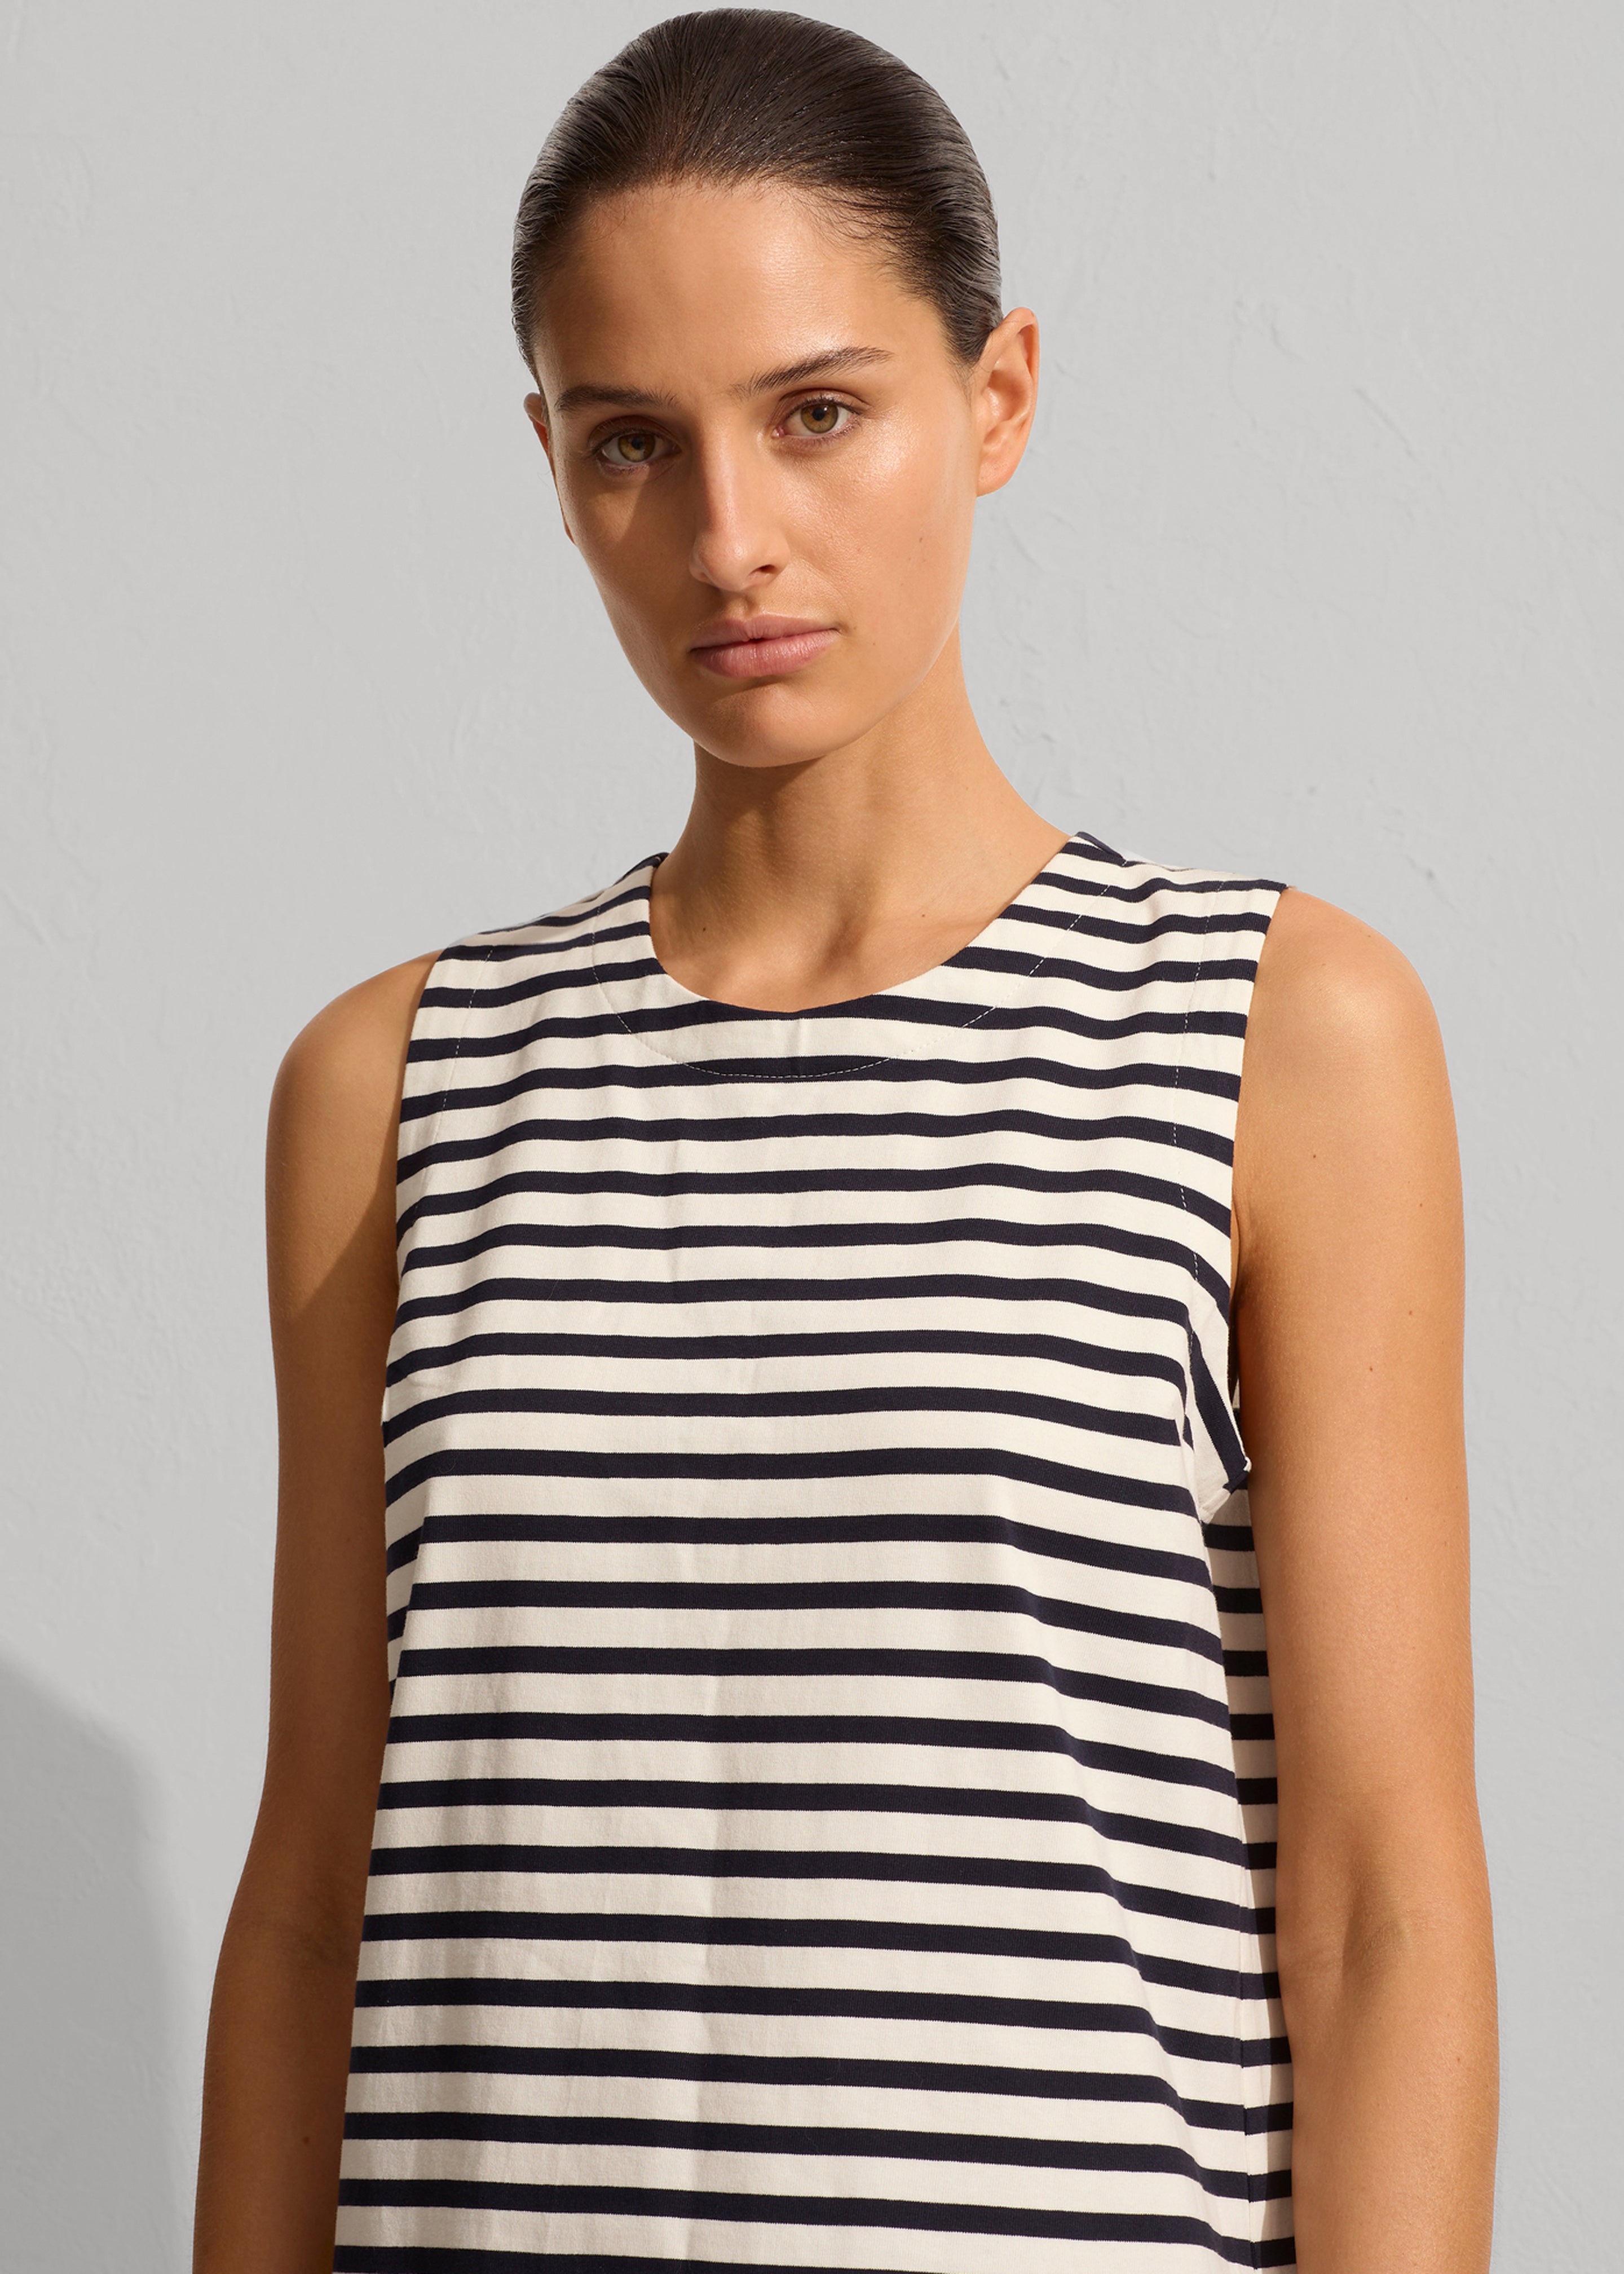 Matteau Stripe Shift Dress - Navy/White - 3